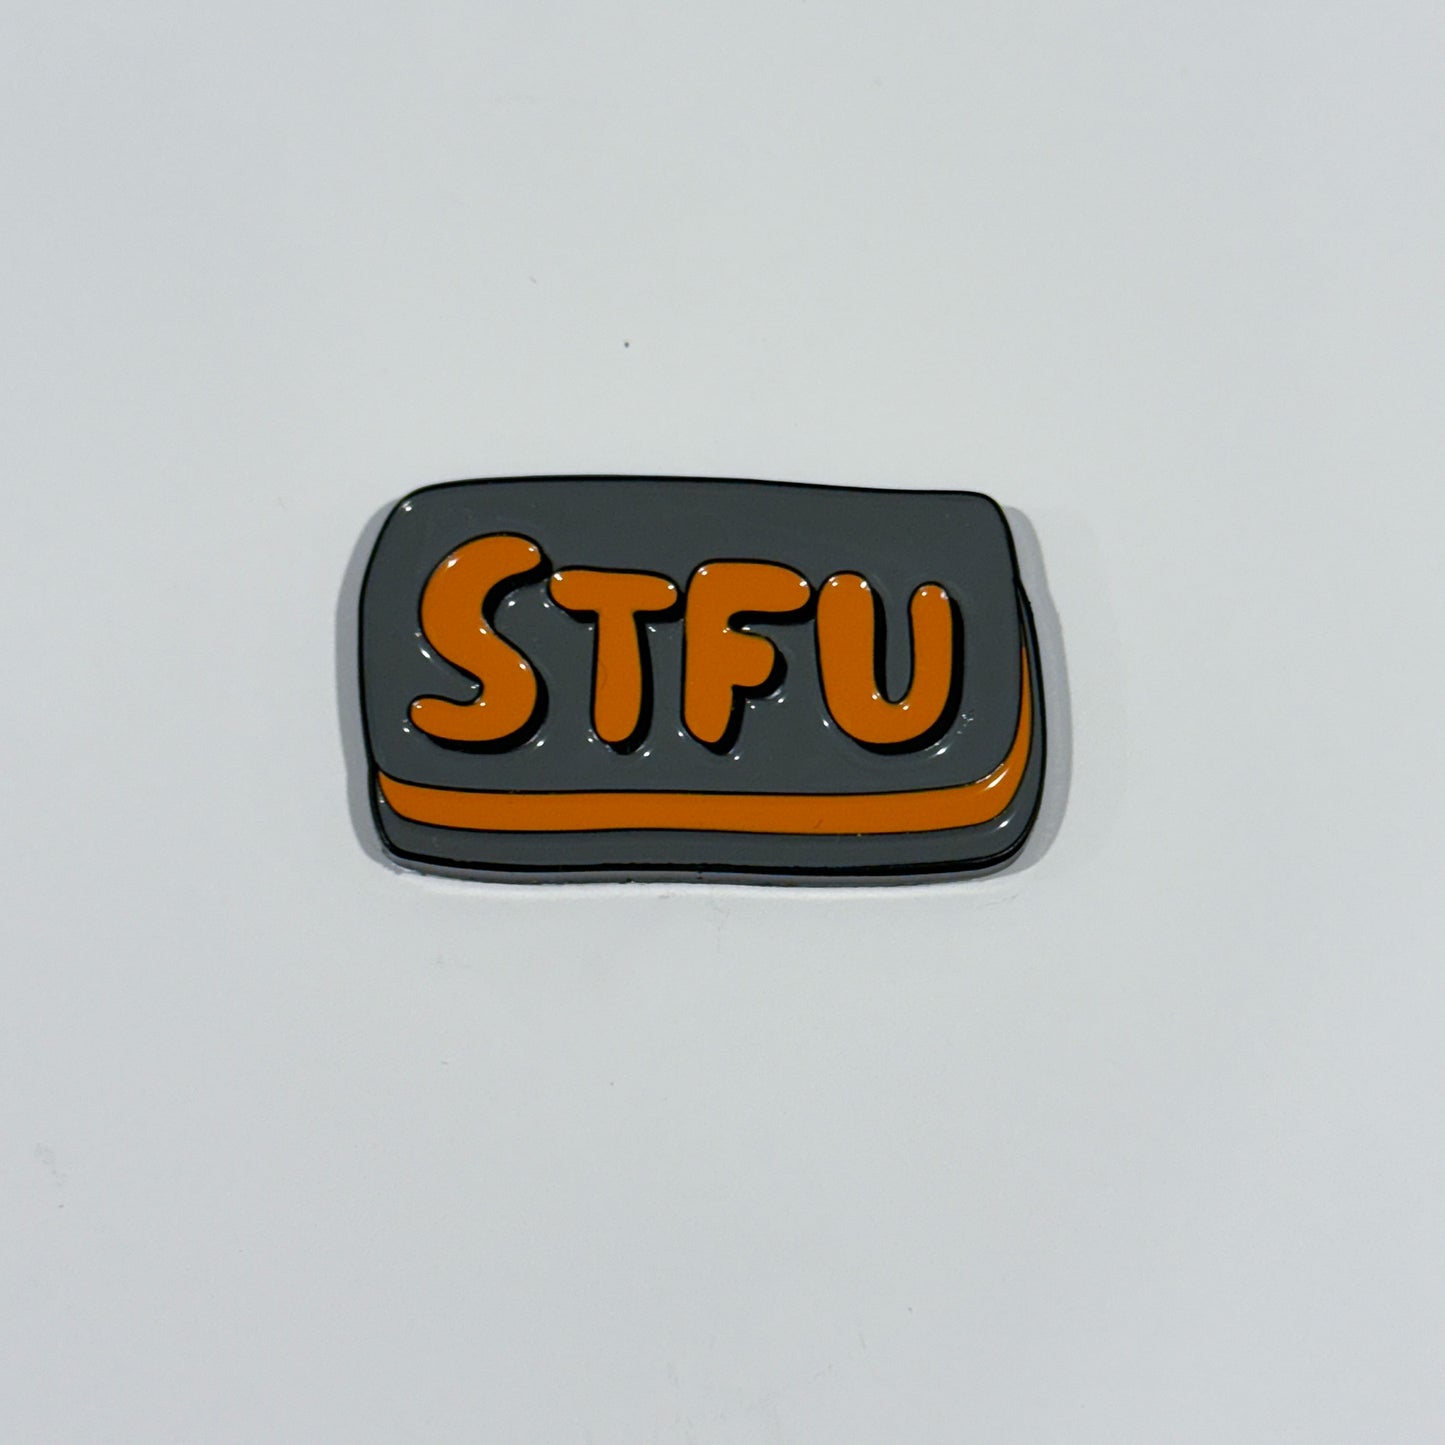 STFU - Sarcastic Sweary Humor Keychain/Pin